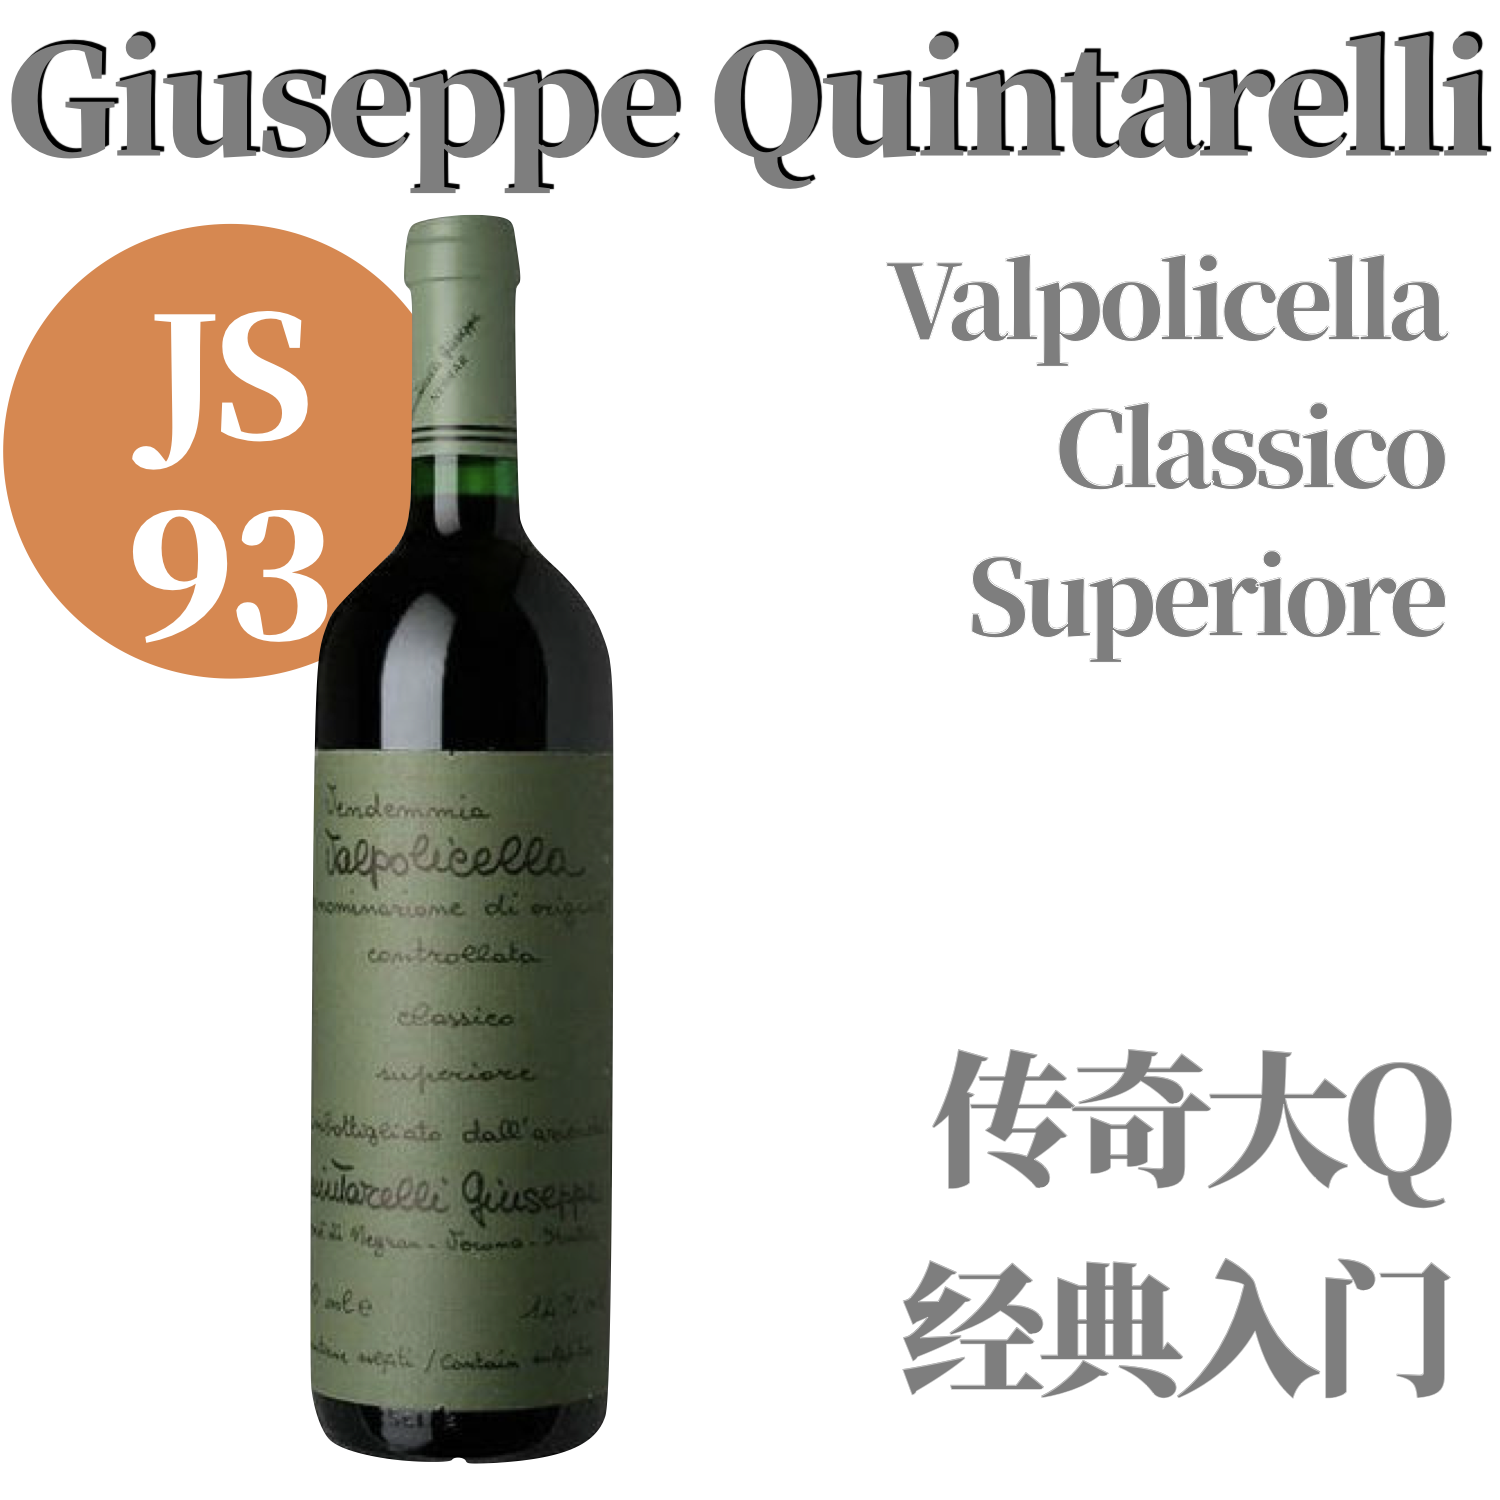 【仅5支·JS93名家入门经典干红】2015 昆塔莱利瓦波利切拉 GIUSEPPE QUINTARELLI Valpolicella Classico Superiore